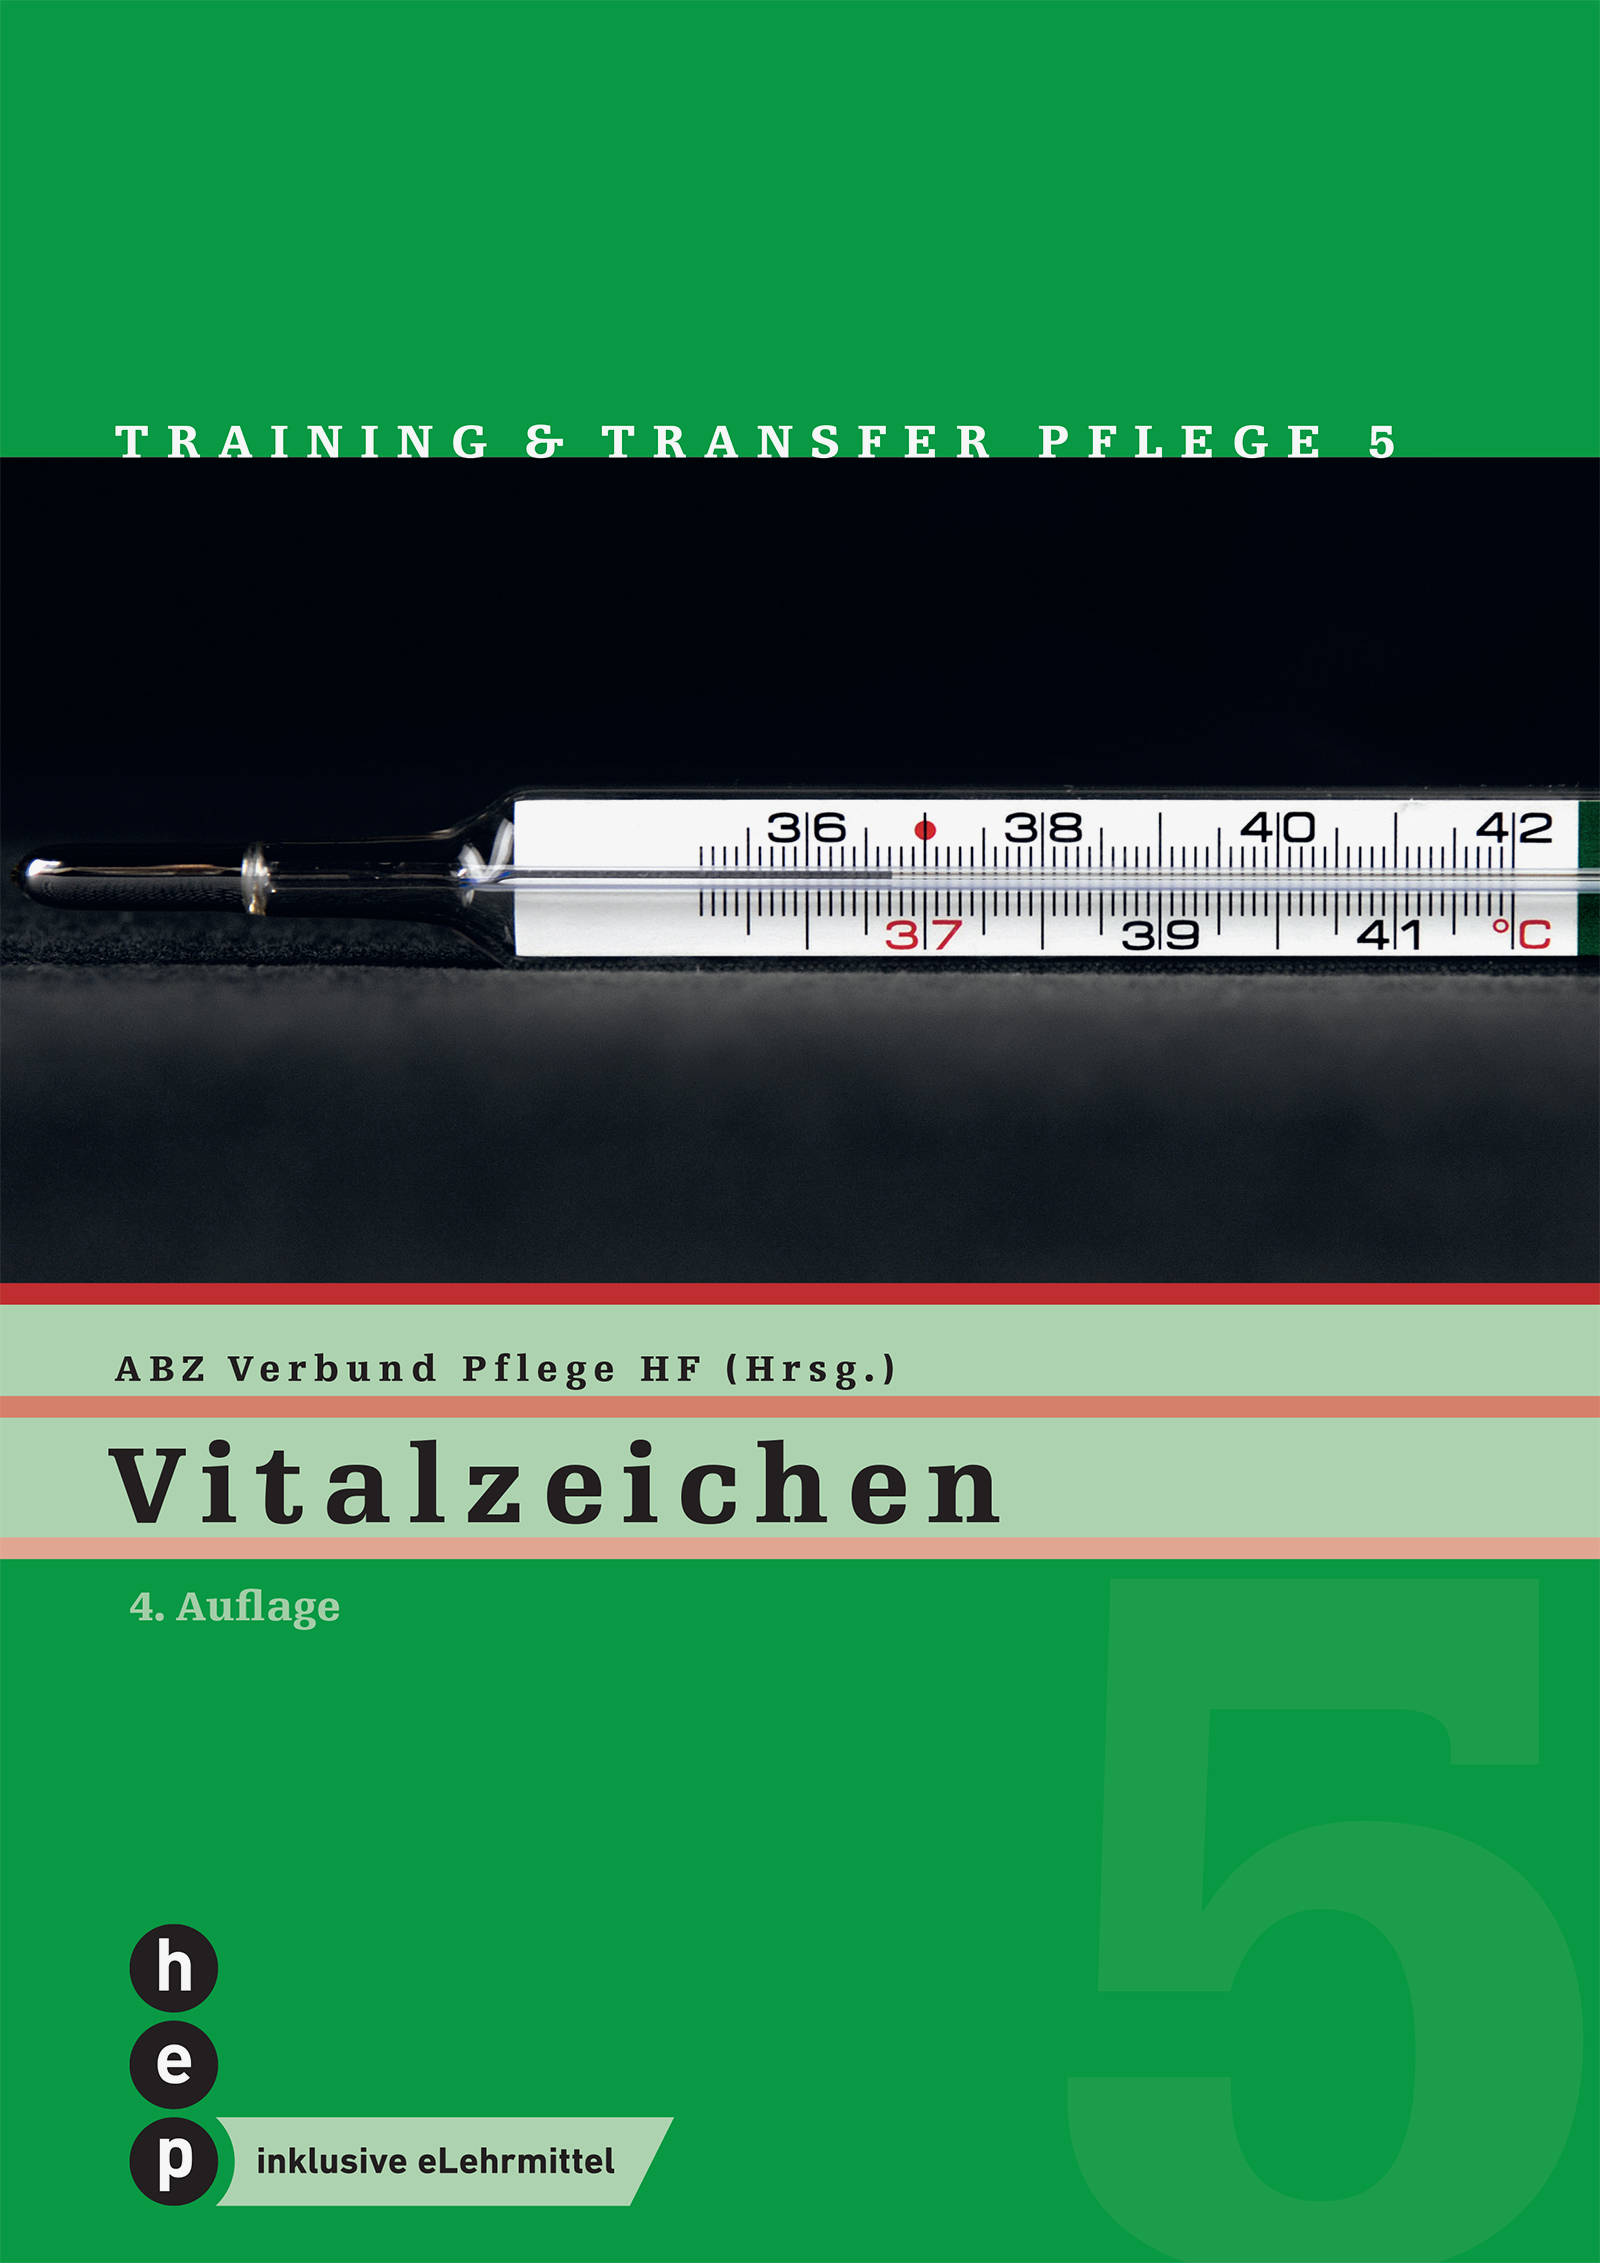 Produktabbildung von Vitalzeichen (Print inkl. digitaler Ausgabe)